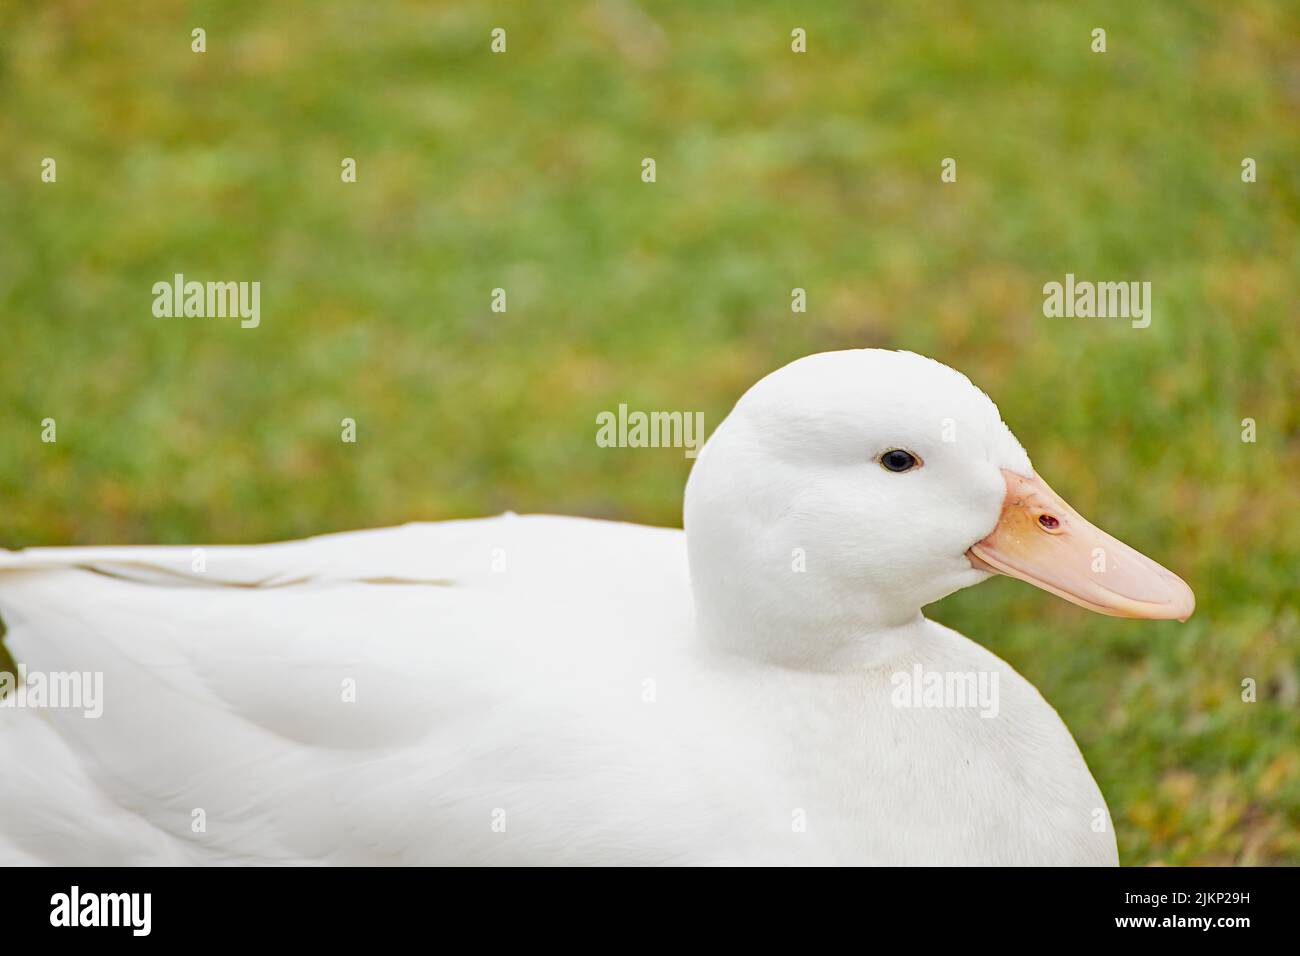 Nahaufnahme einer weißen Ente, die auf einem Rasen liegt Stockfoto